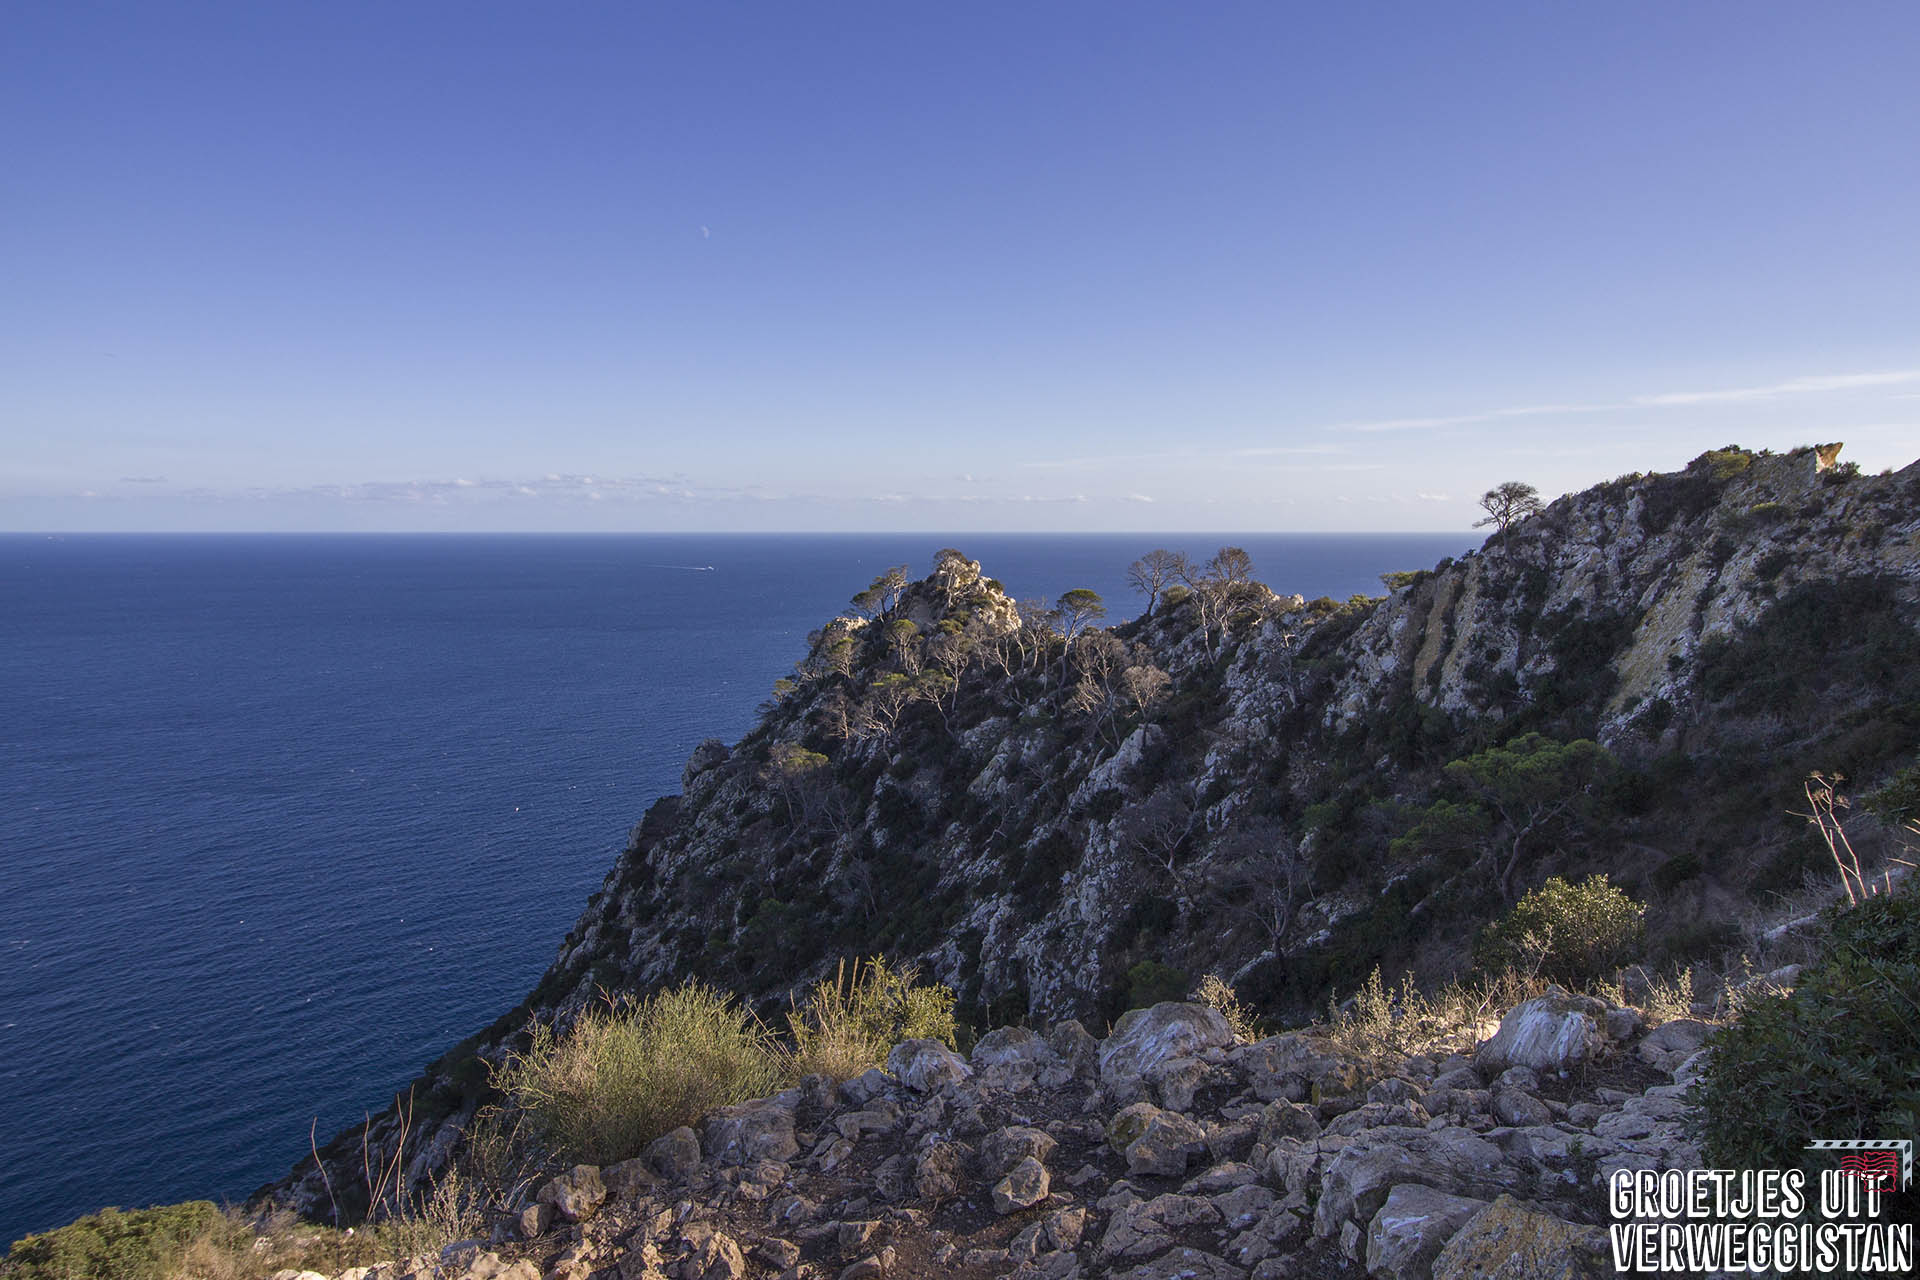 Uitzicht over de Middellandse Zee vanaf Peñon de Ifach